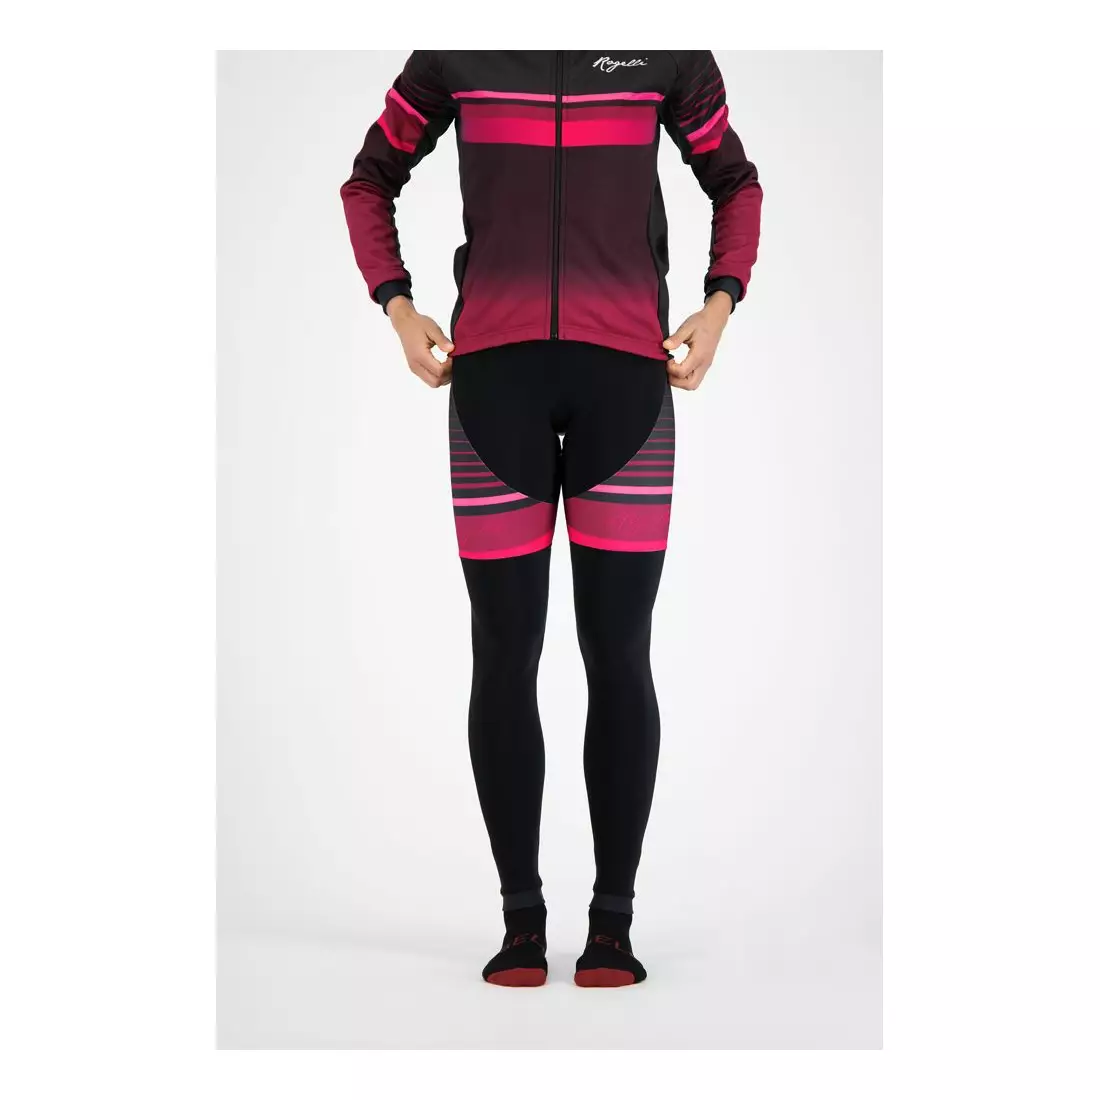 ROGELLI zimowe spodnie rowerowe damskie na szelkach IMPRESS black/pink